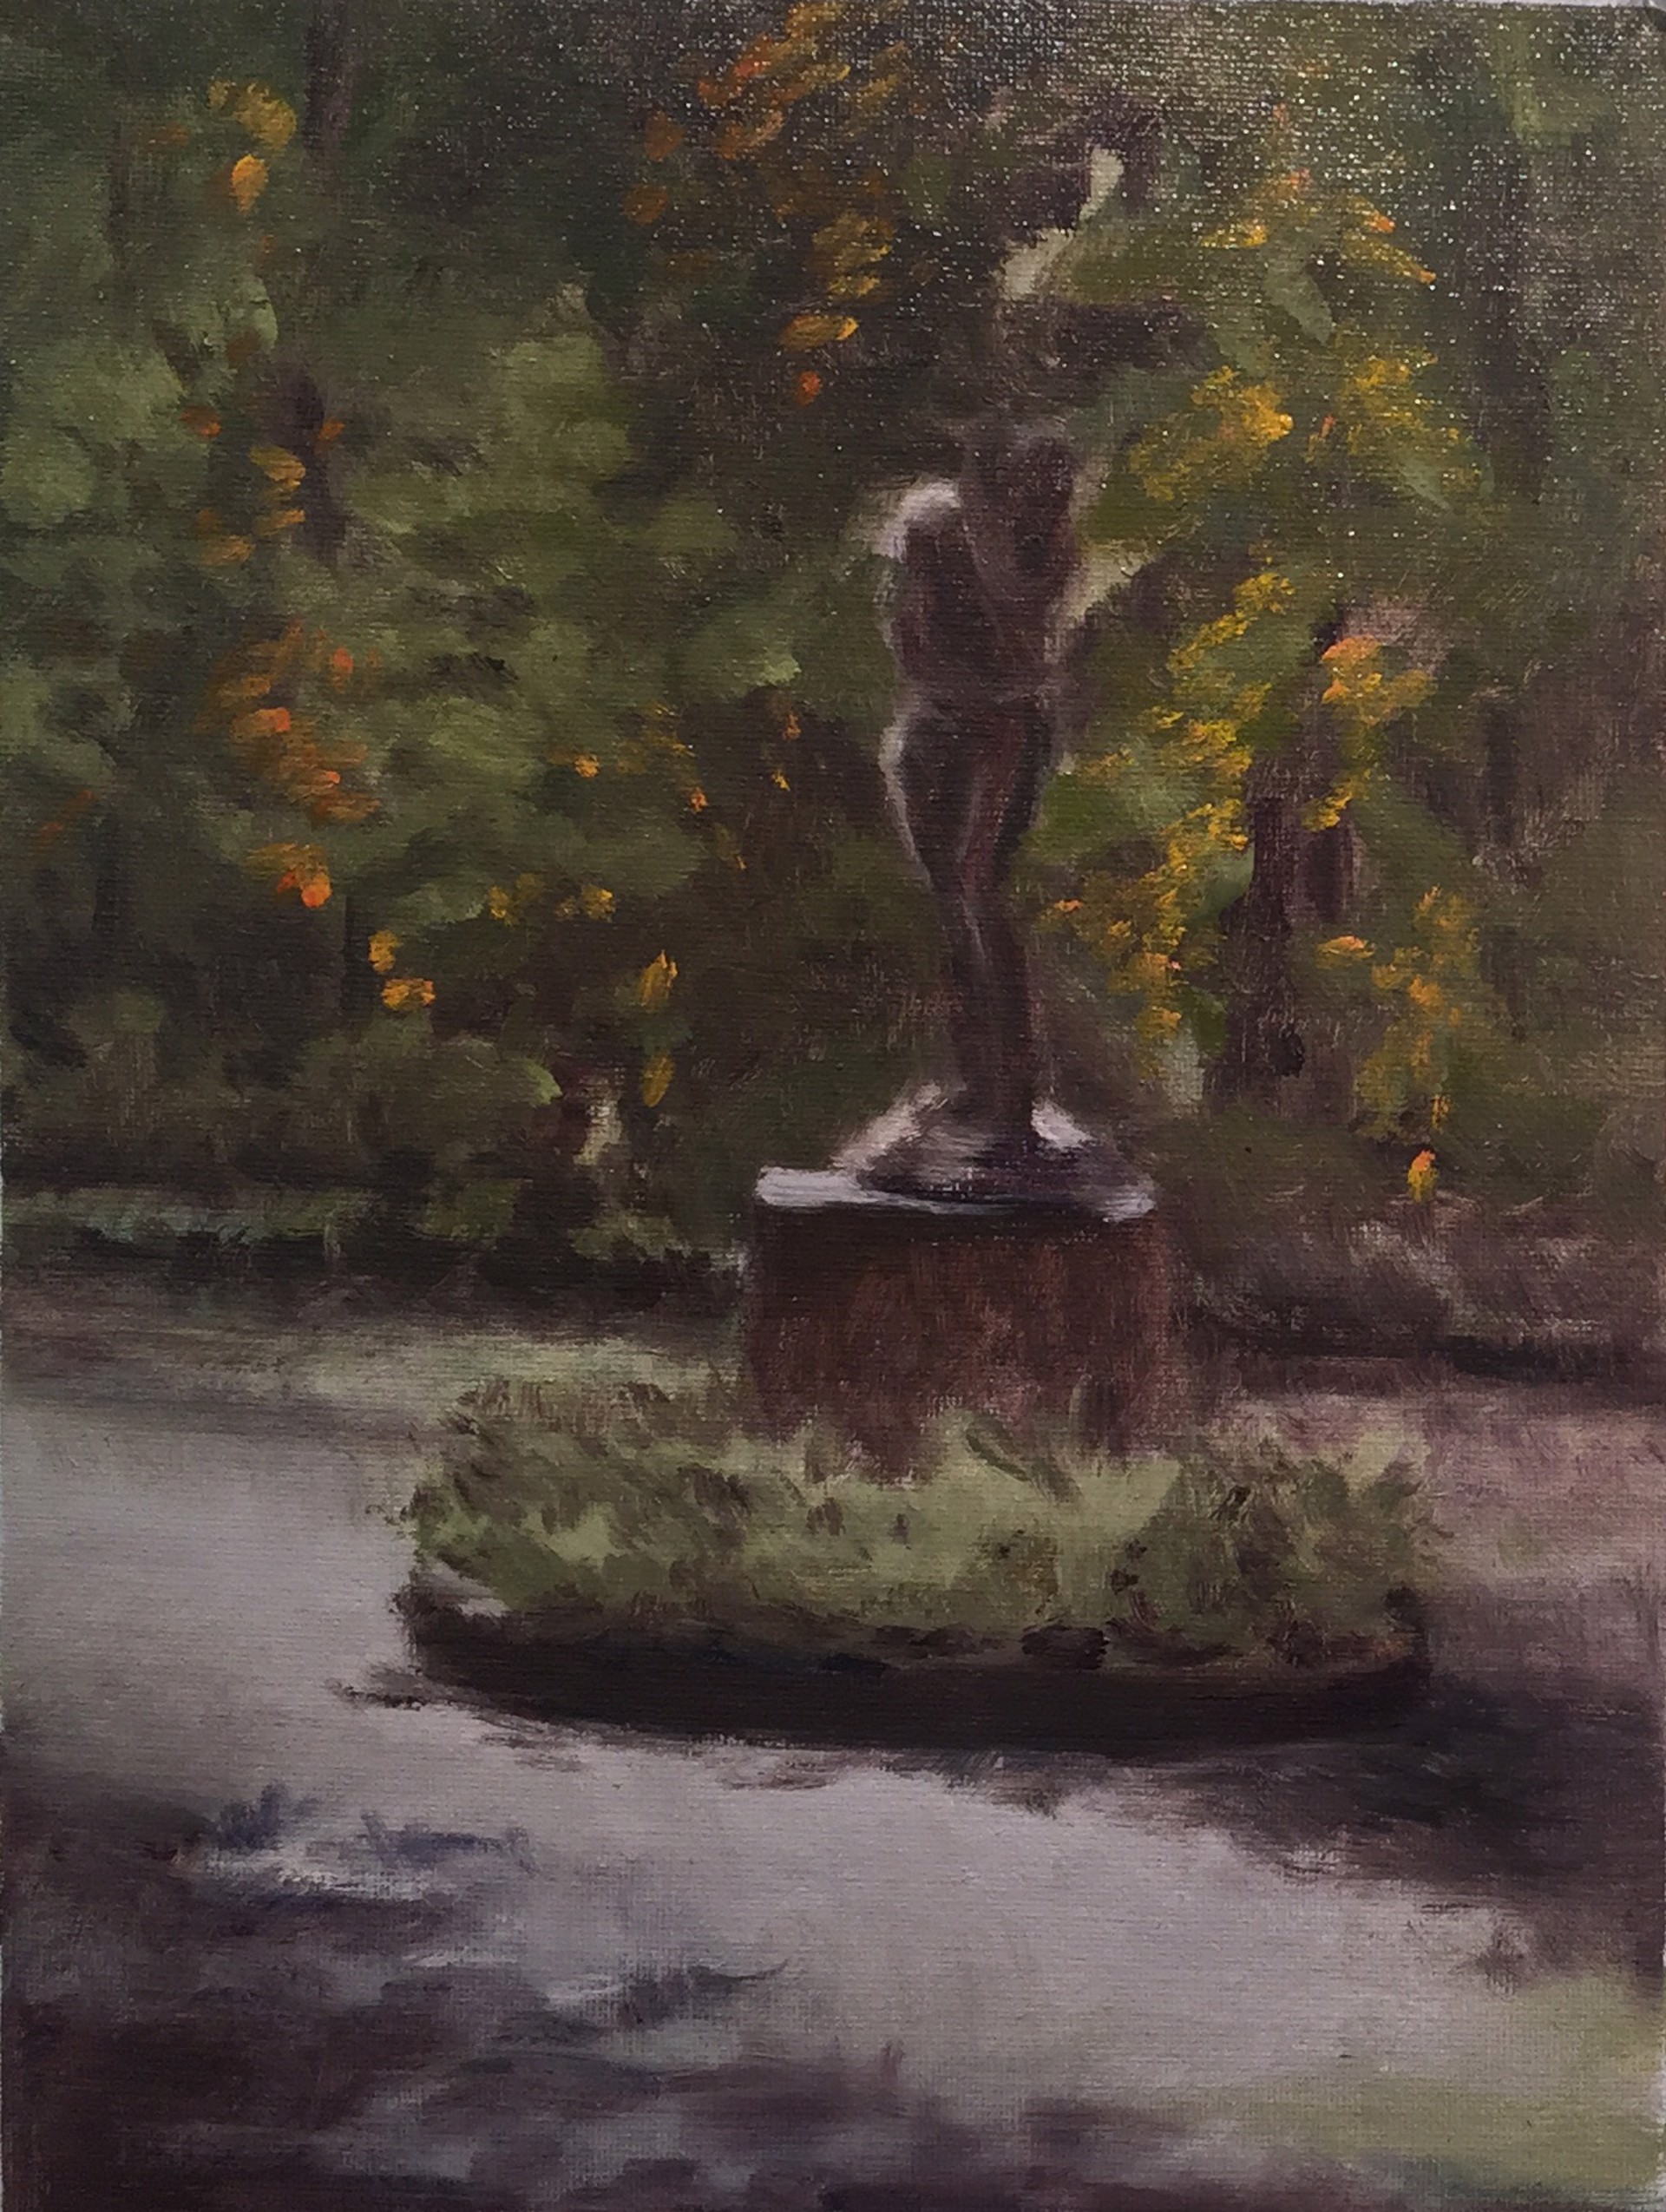 Rodin's Eve by Kathryn Cárdenas